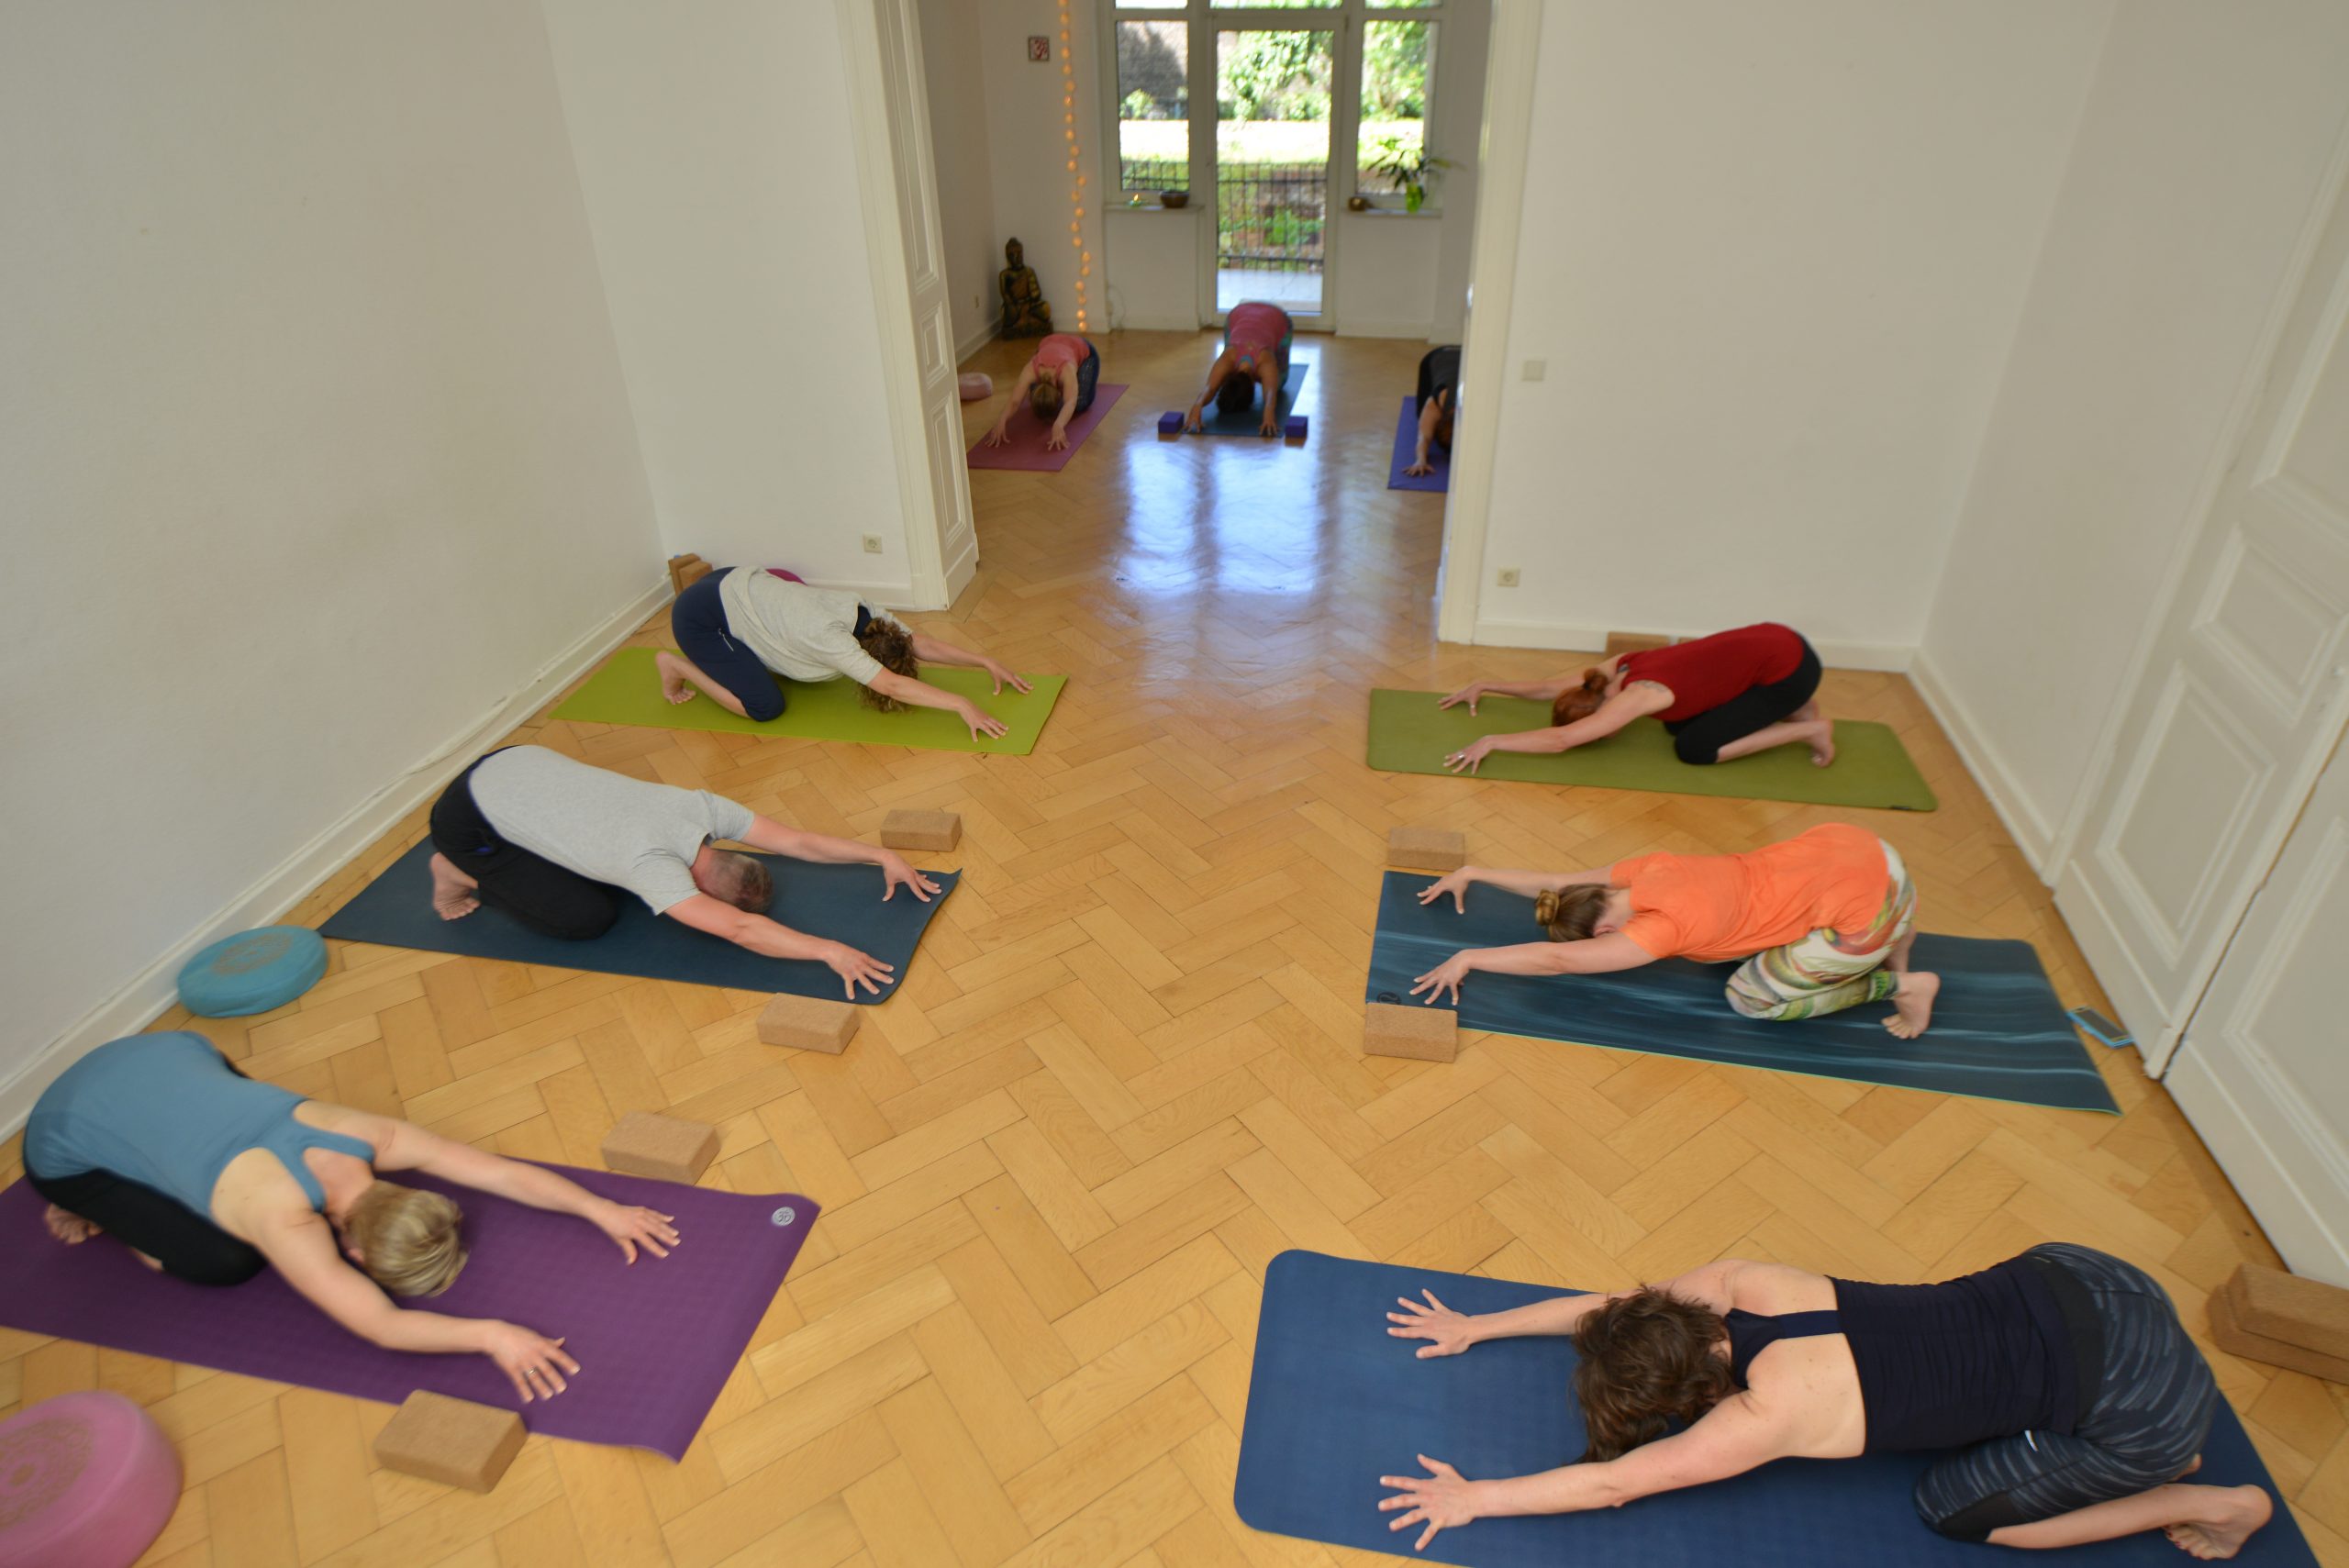 Yoga Studio 52 in Bonn